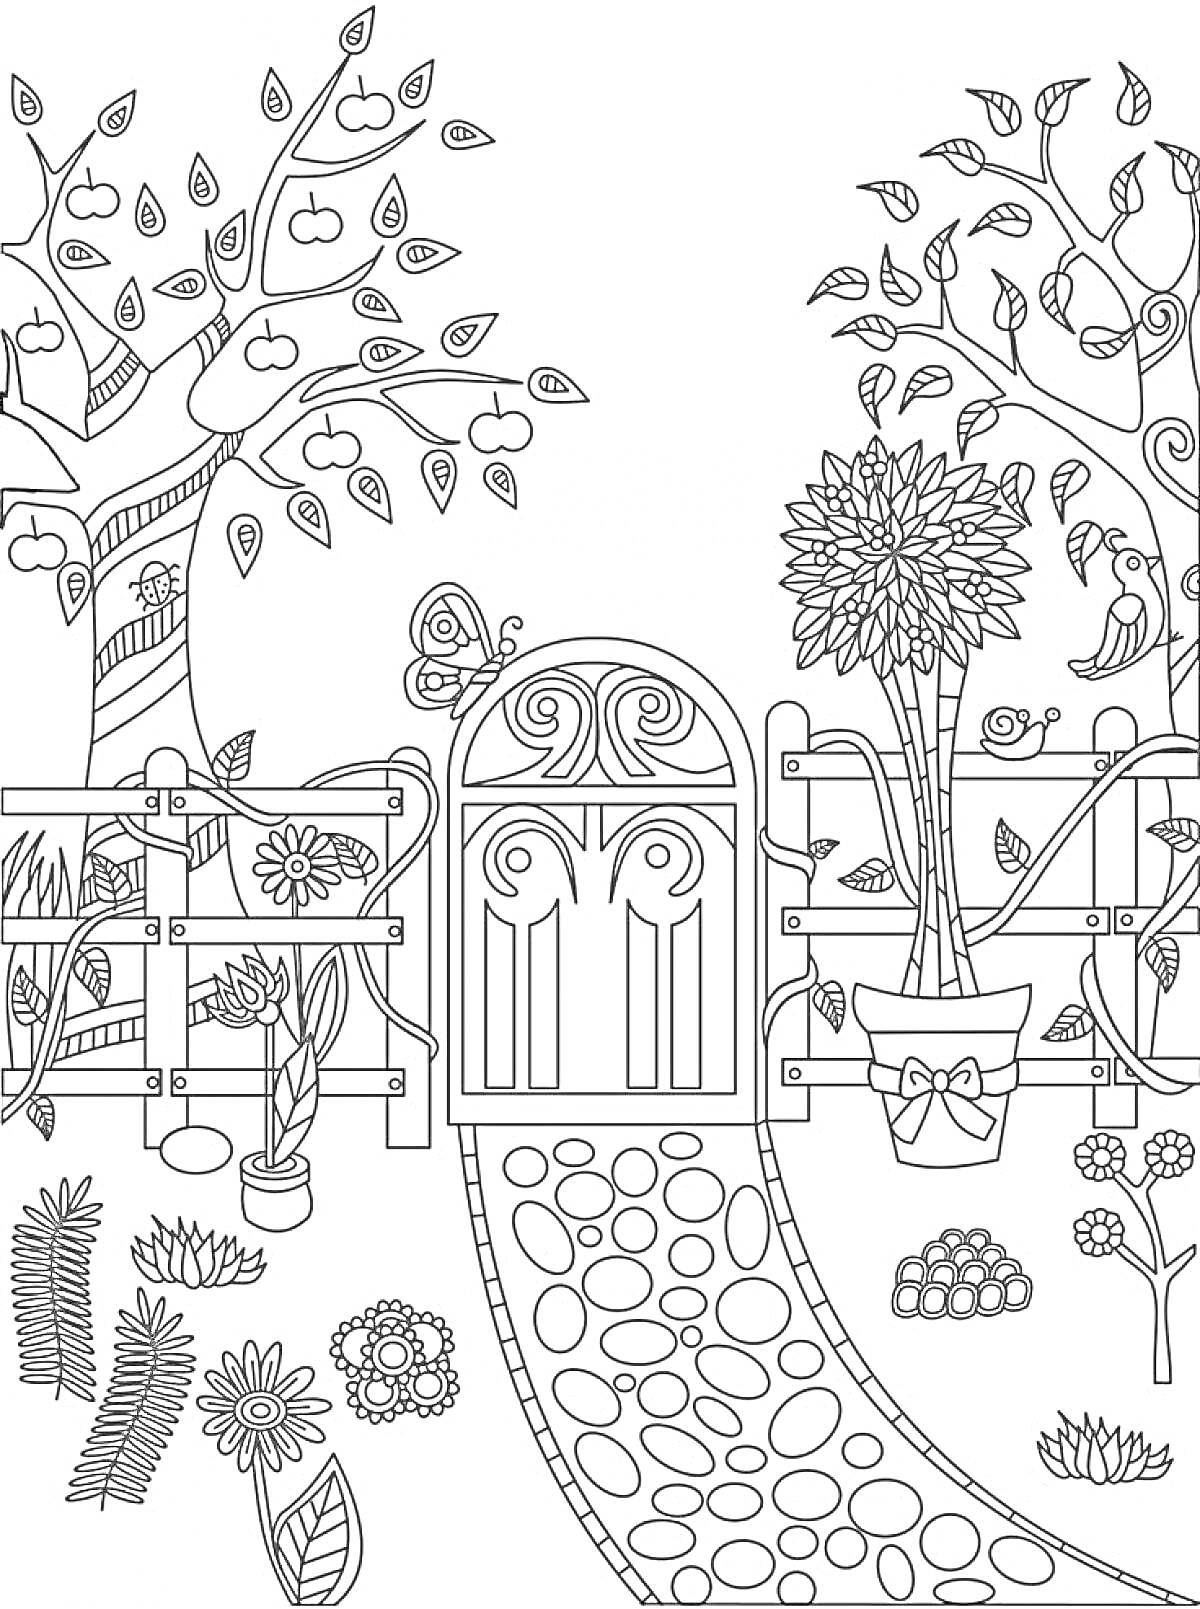 Раскраска Сад с деревьями, цветами и воротами